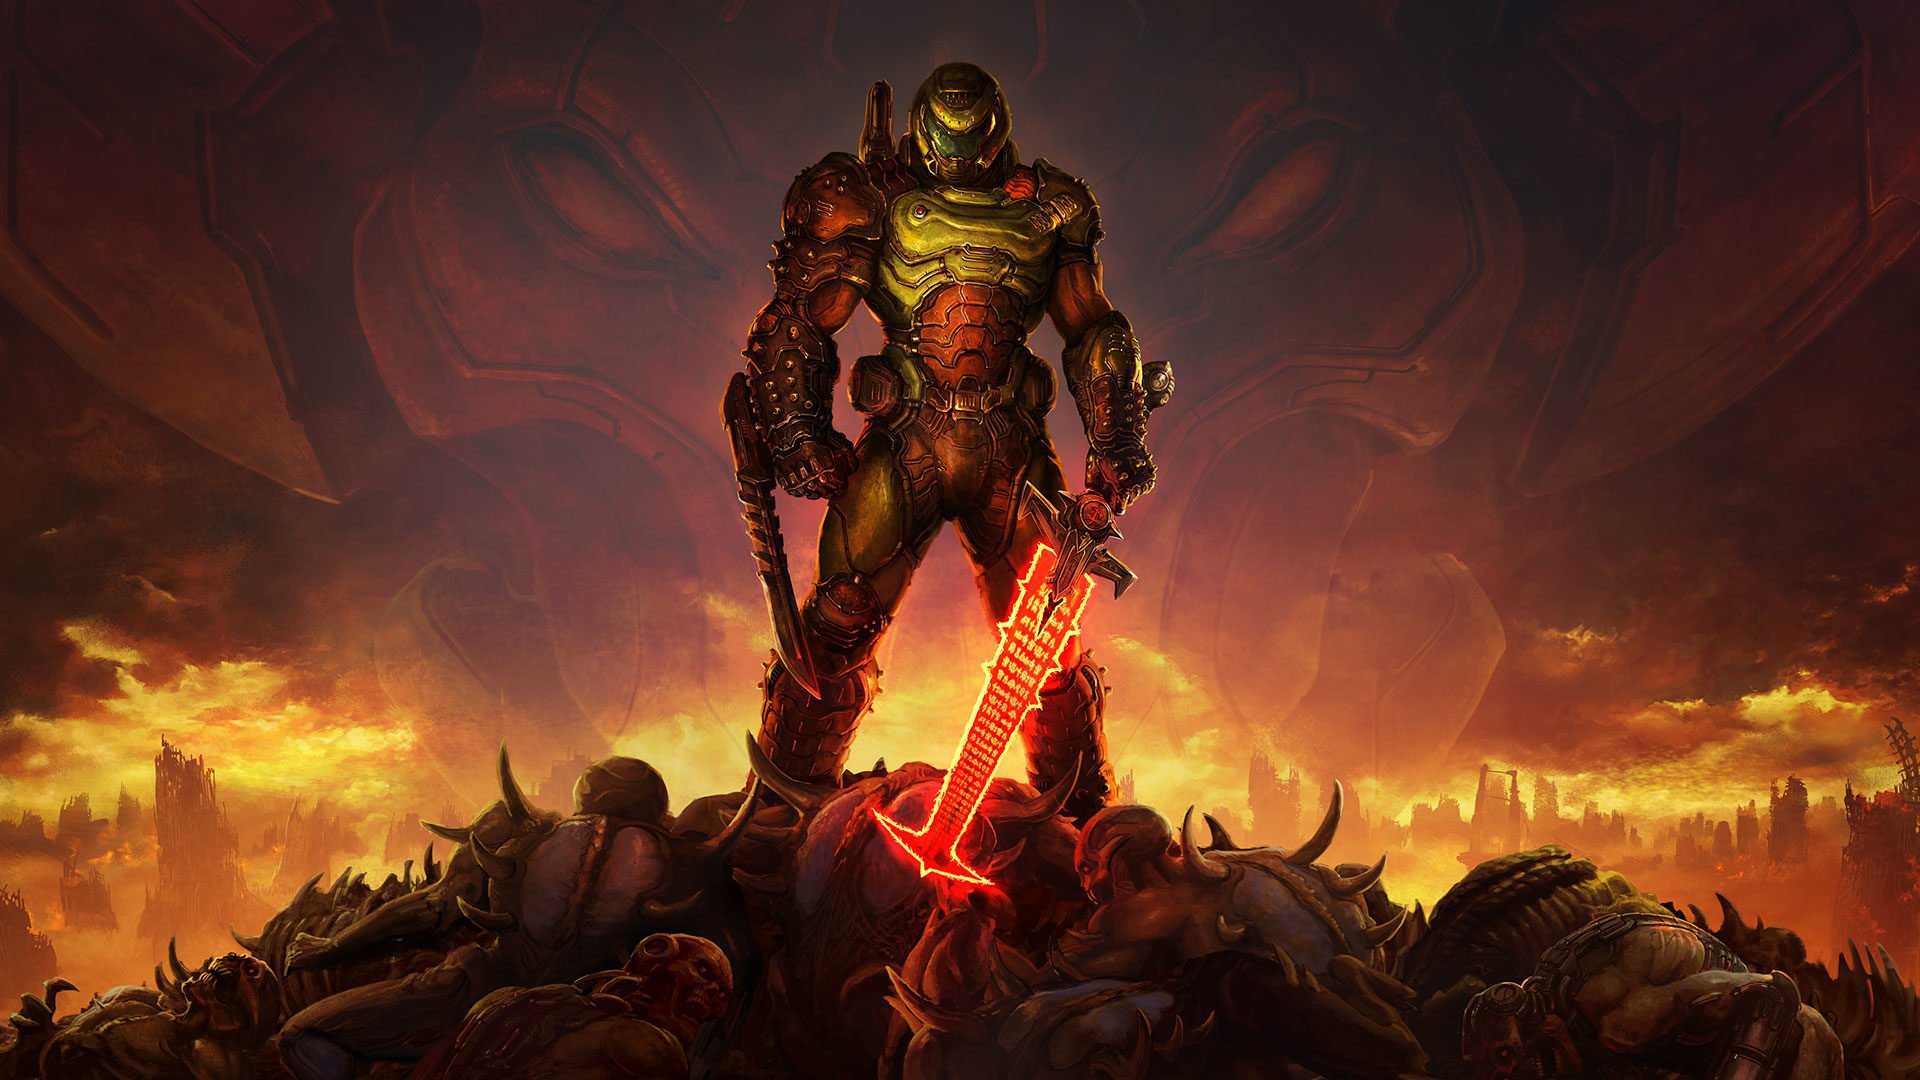 Doom Eternal'ın Tartışmalı Anti-Cheat Sistemi Kaldırılıyor